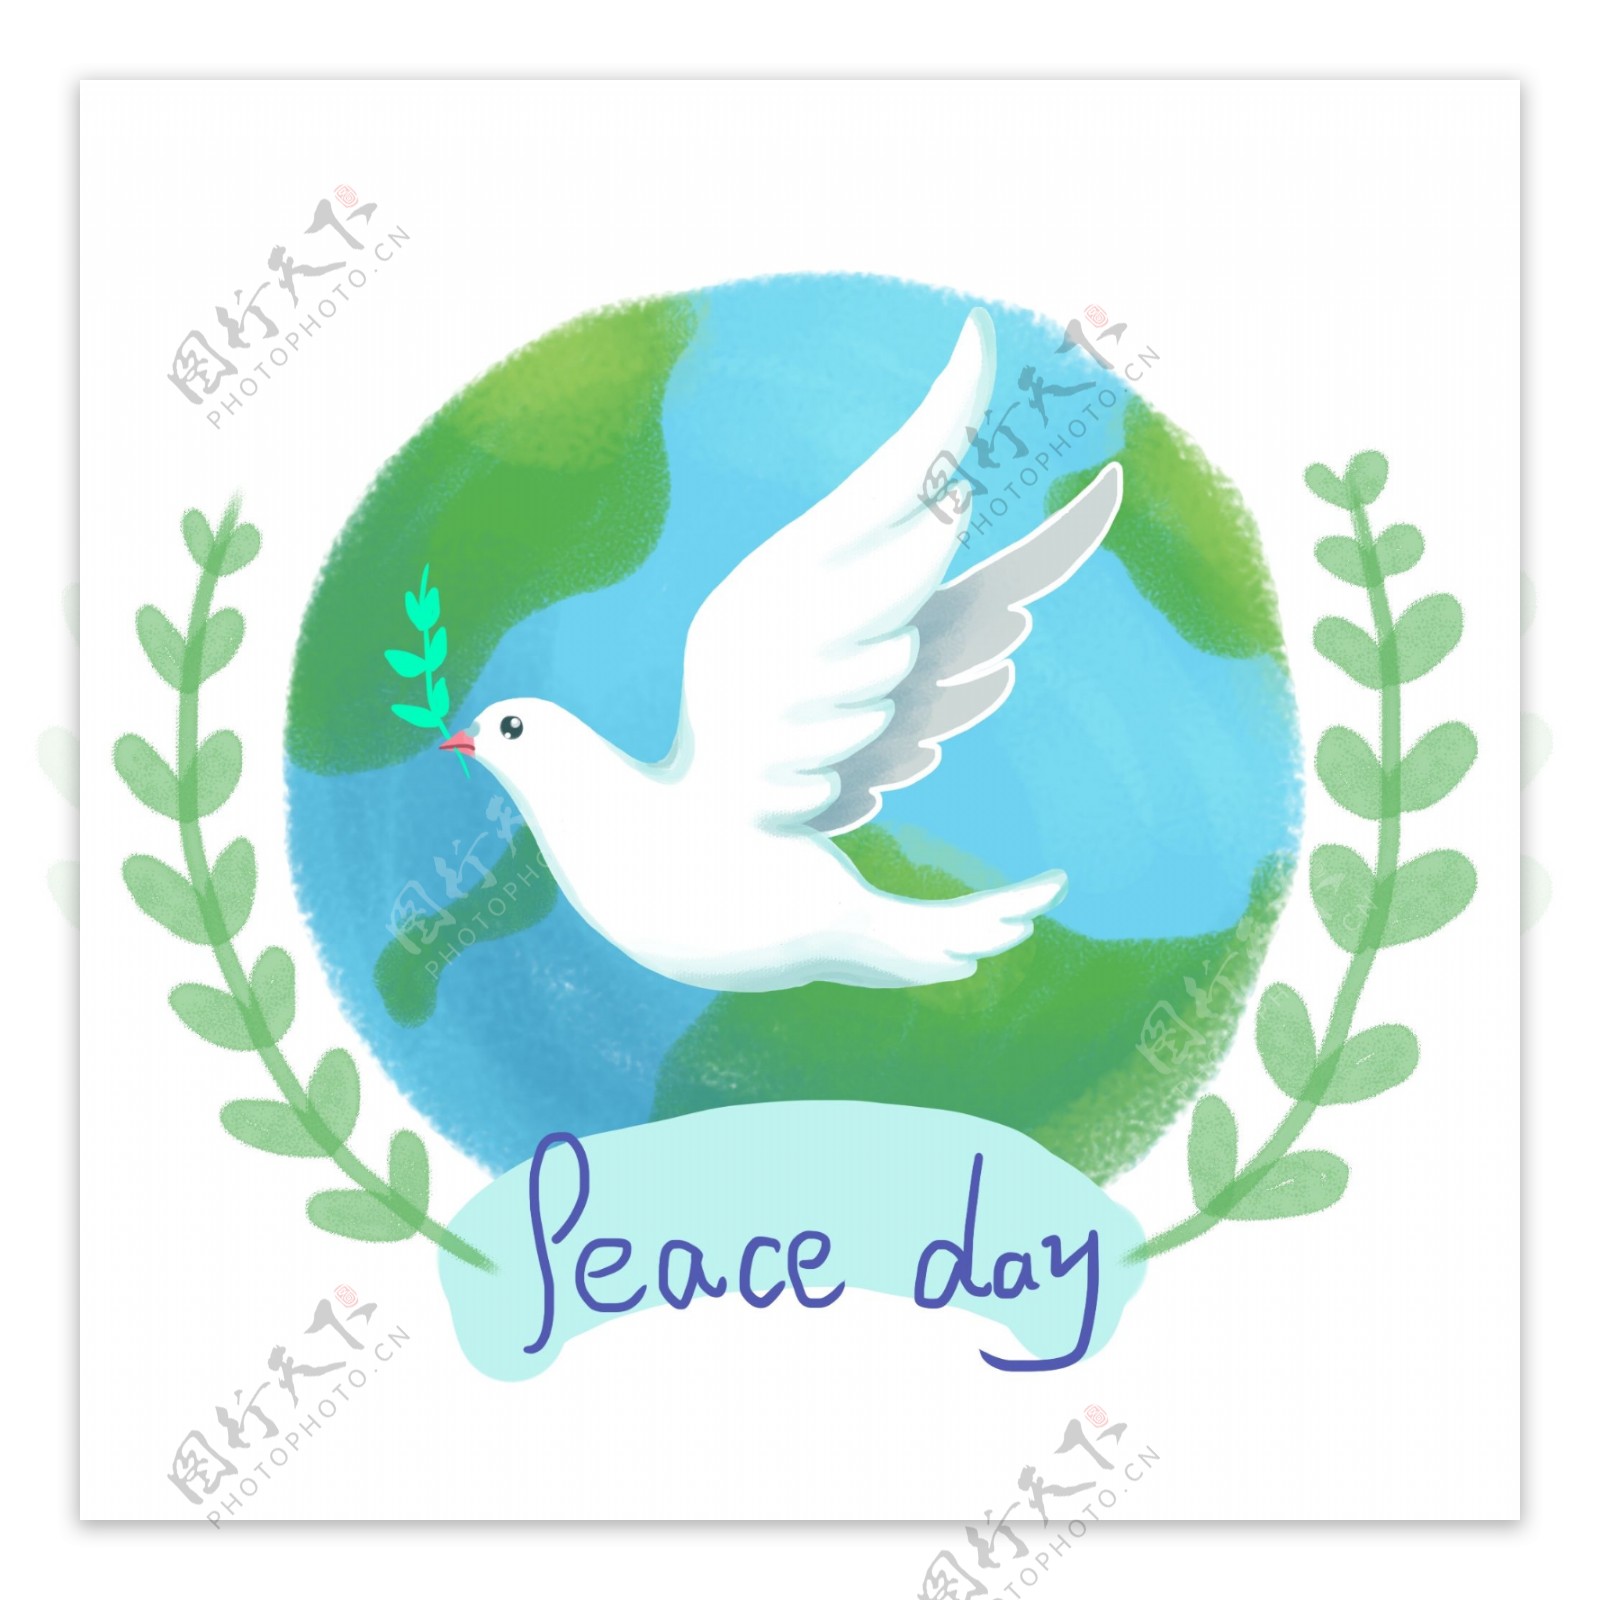 国际和平日手绘小清新鸽子橄榄枝地球插画